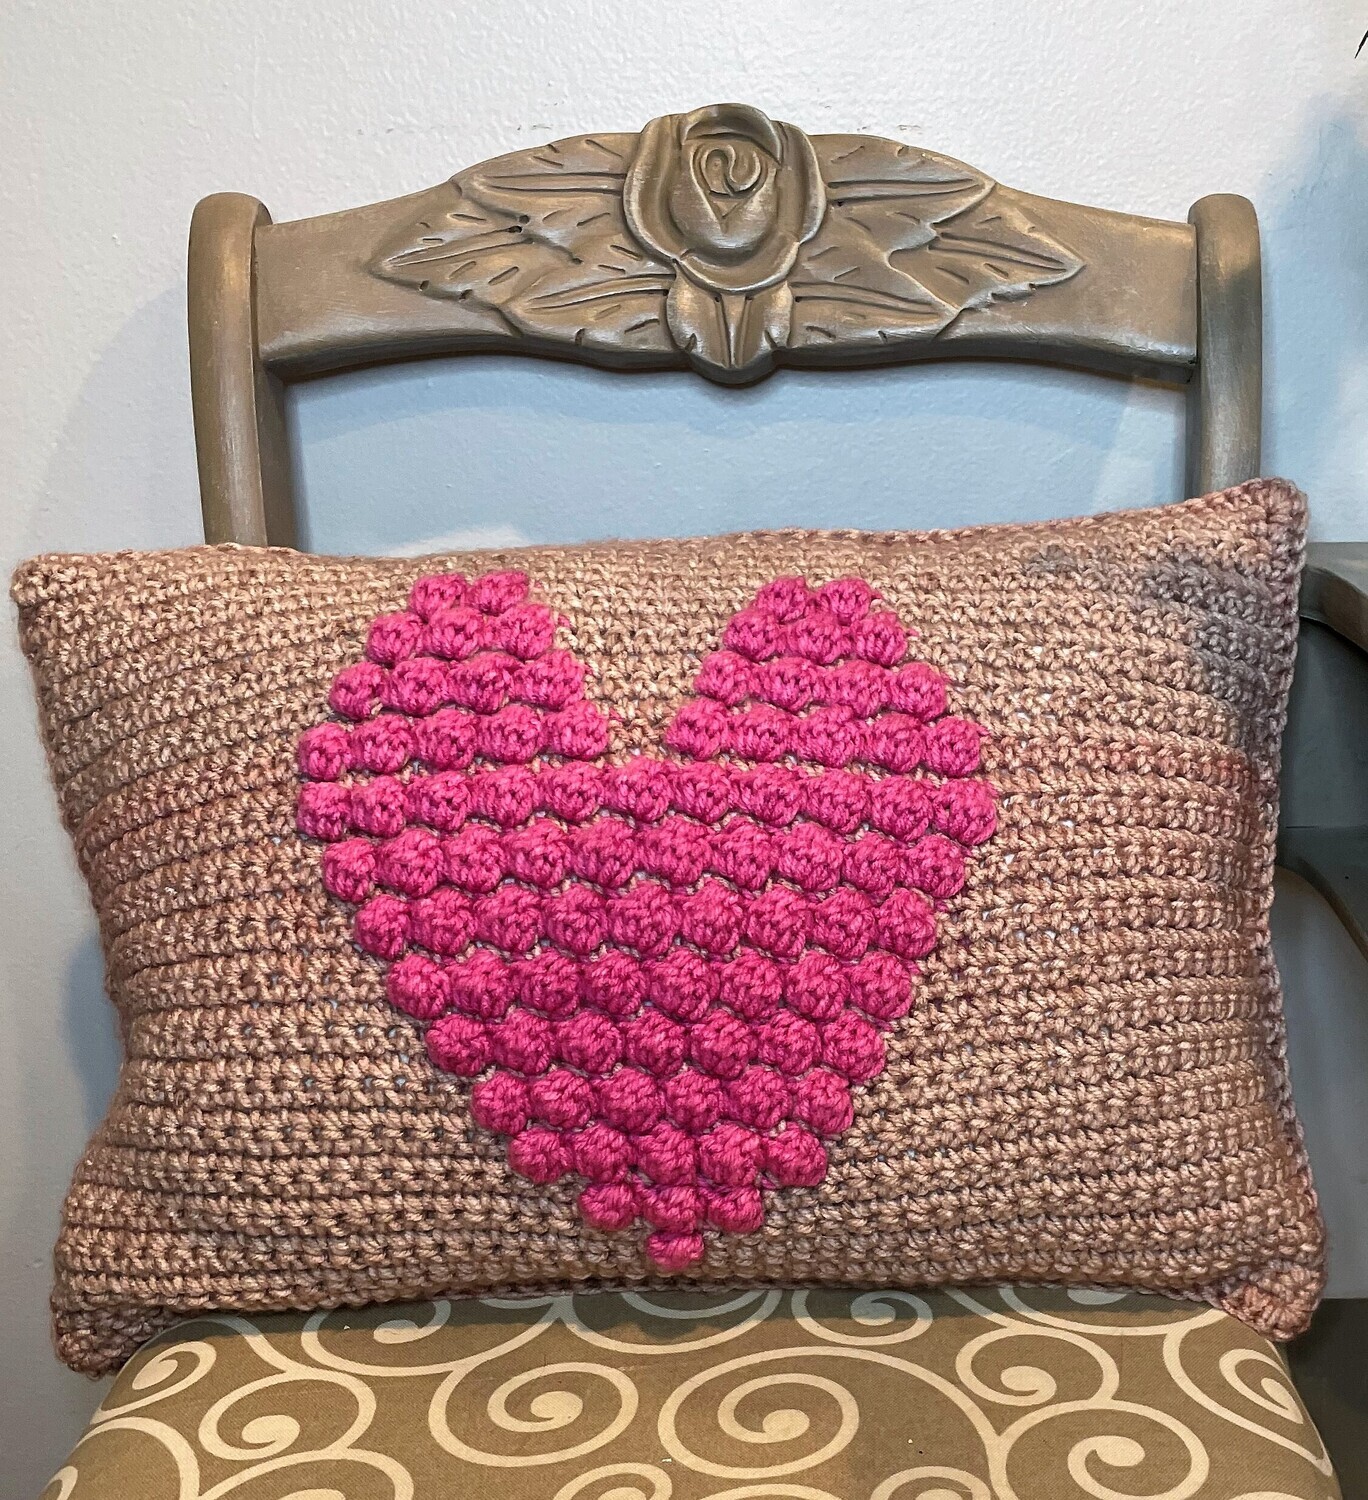 Choose Love / Heart Crochet Decorative Pillow